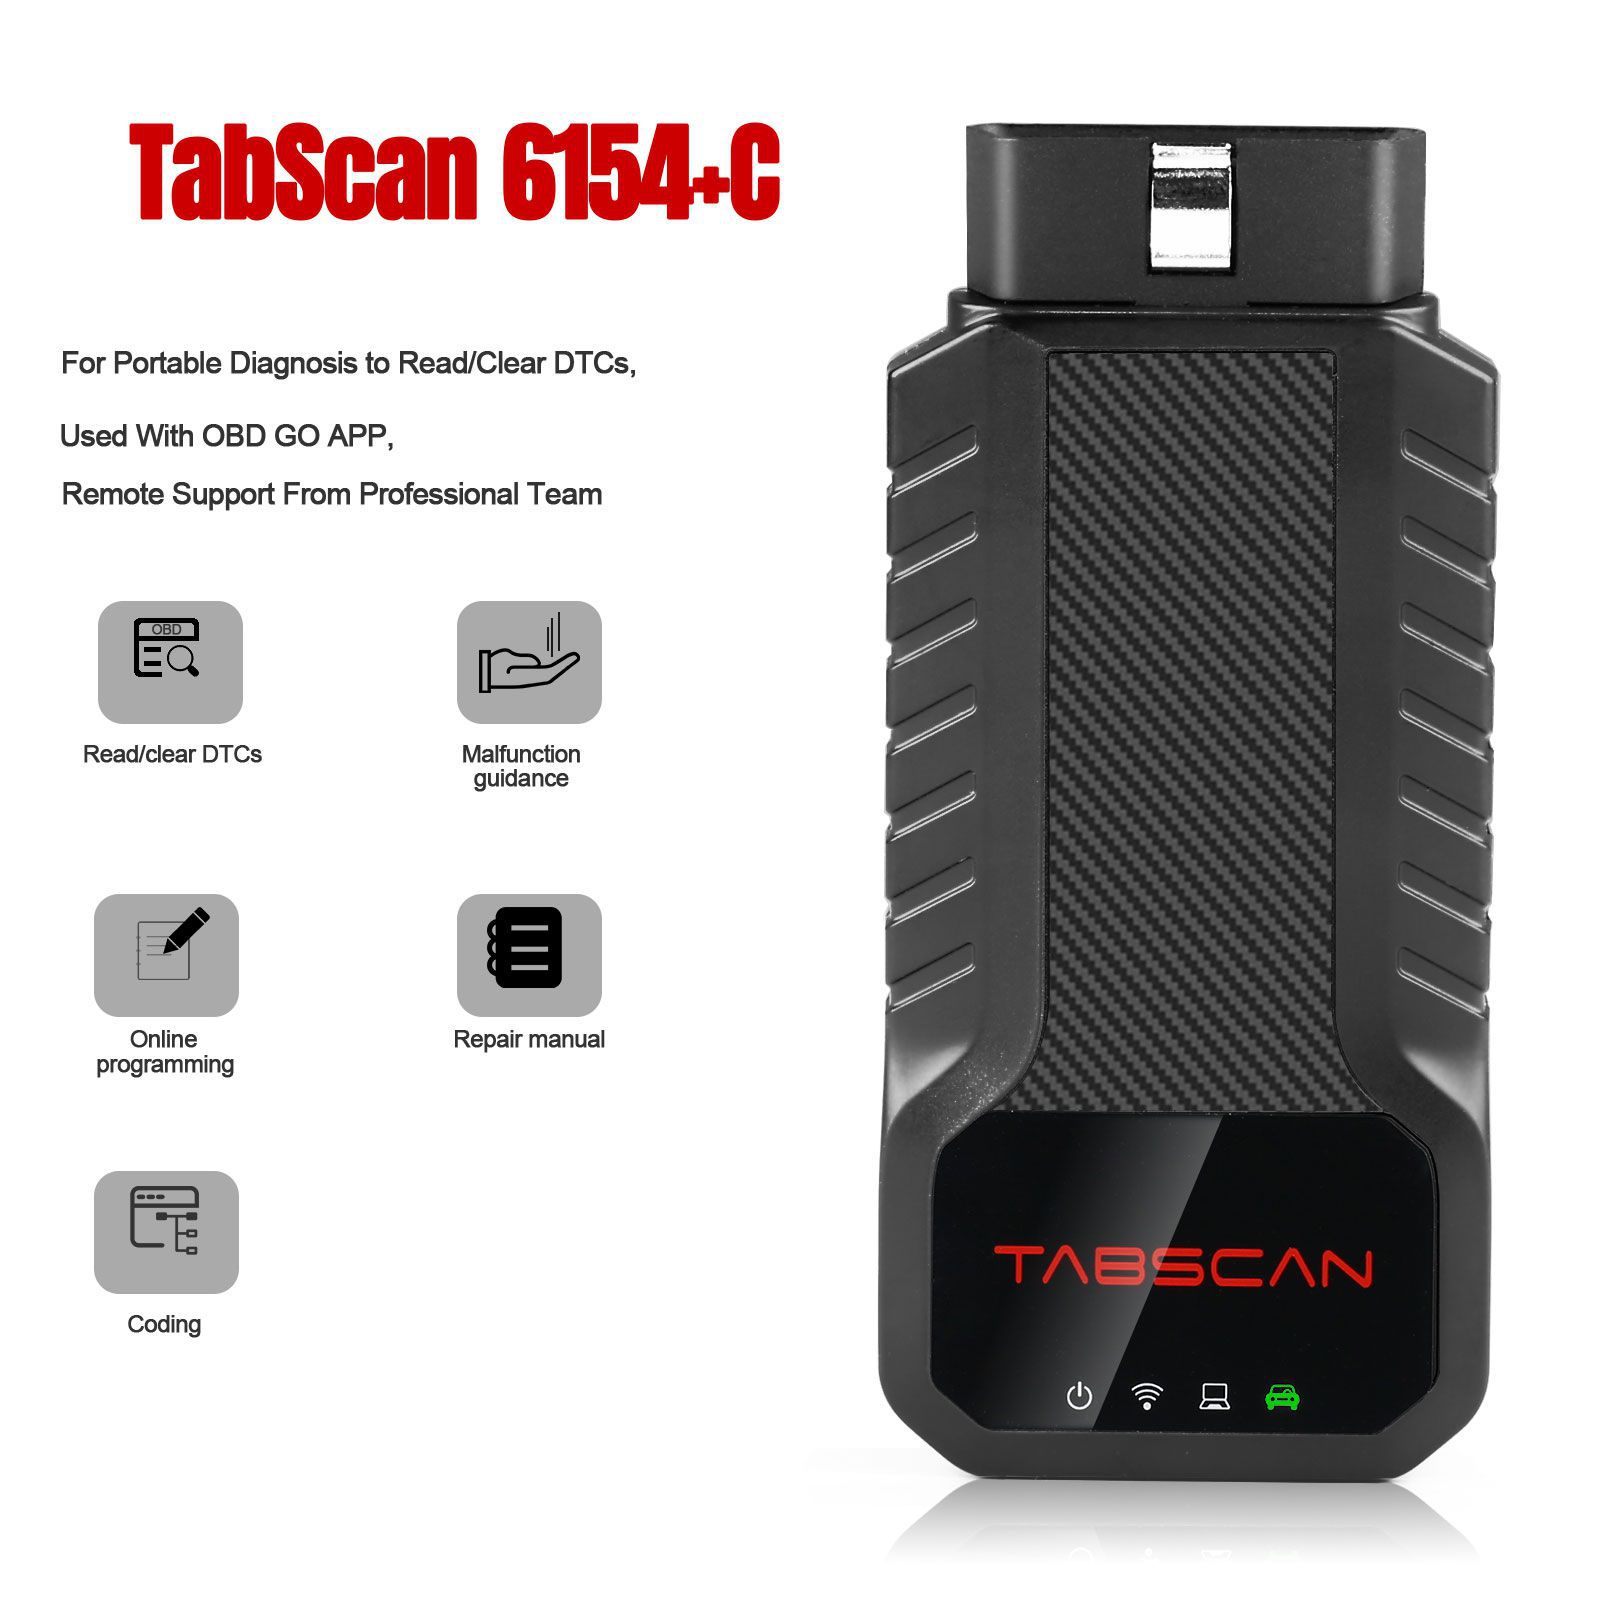 Dispositivo diagnóstico portátil de TabScan 6154+C para o diagnóstico portátil para ler/limpar DTCs, usado com OBD GO APP, suporte remoto da equipe profissional